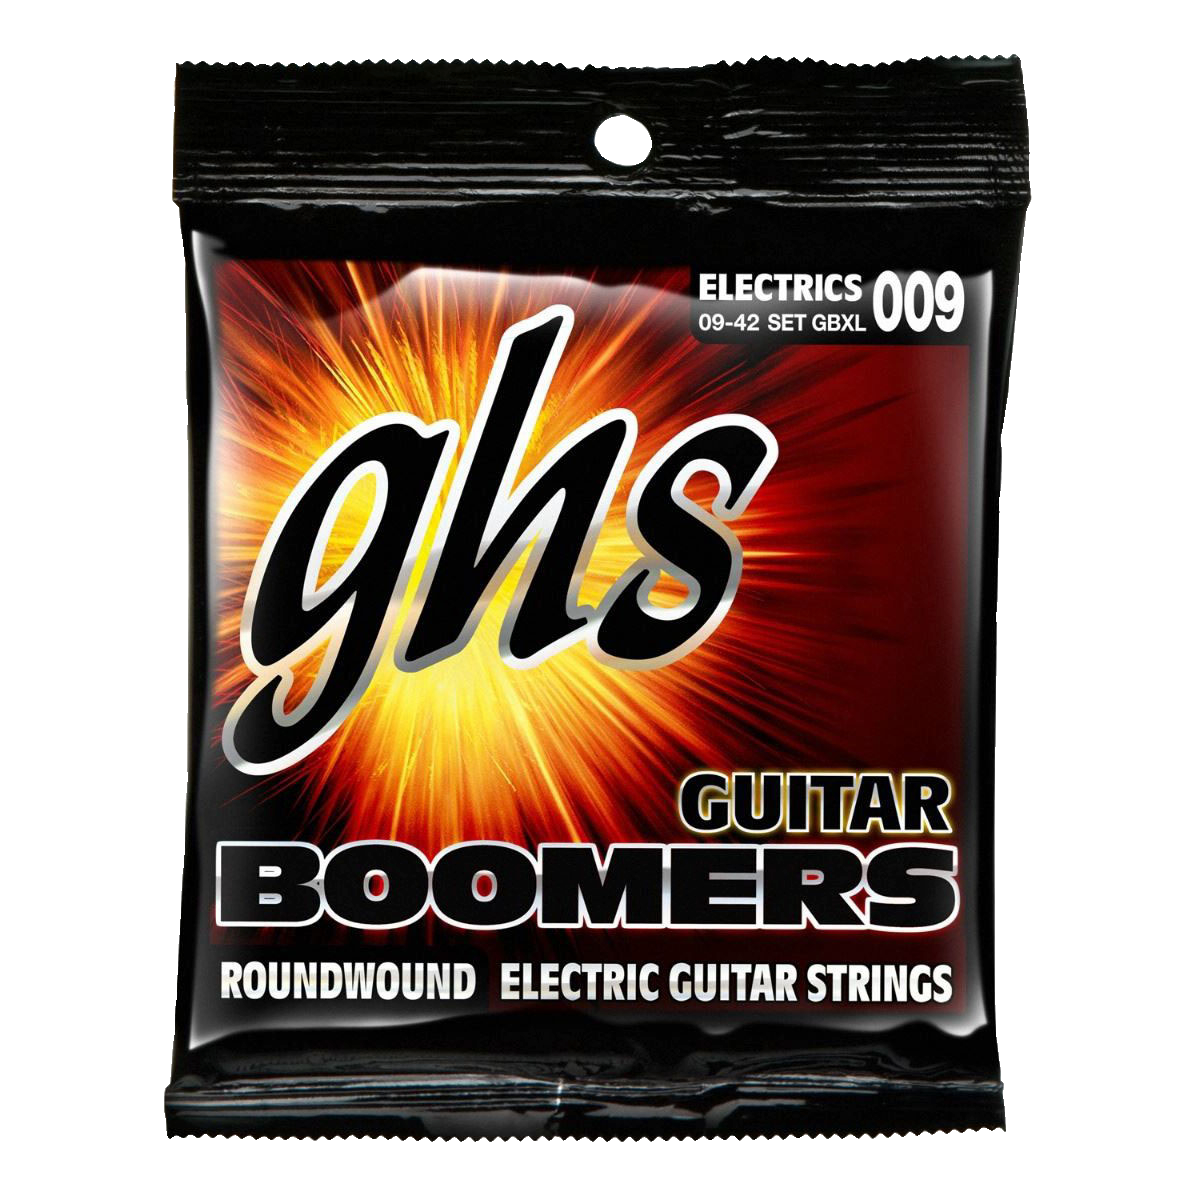 GHS GBL Boomers ekstra lette elektrisk guitarstrenge - DJ-udstyr &  musikinstrumenter - Elgiganten